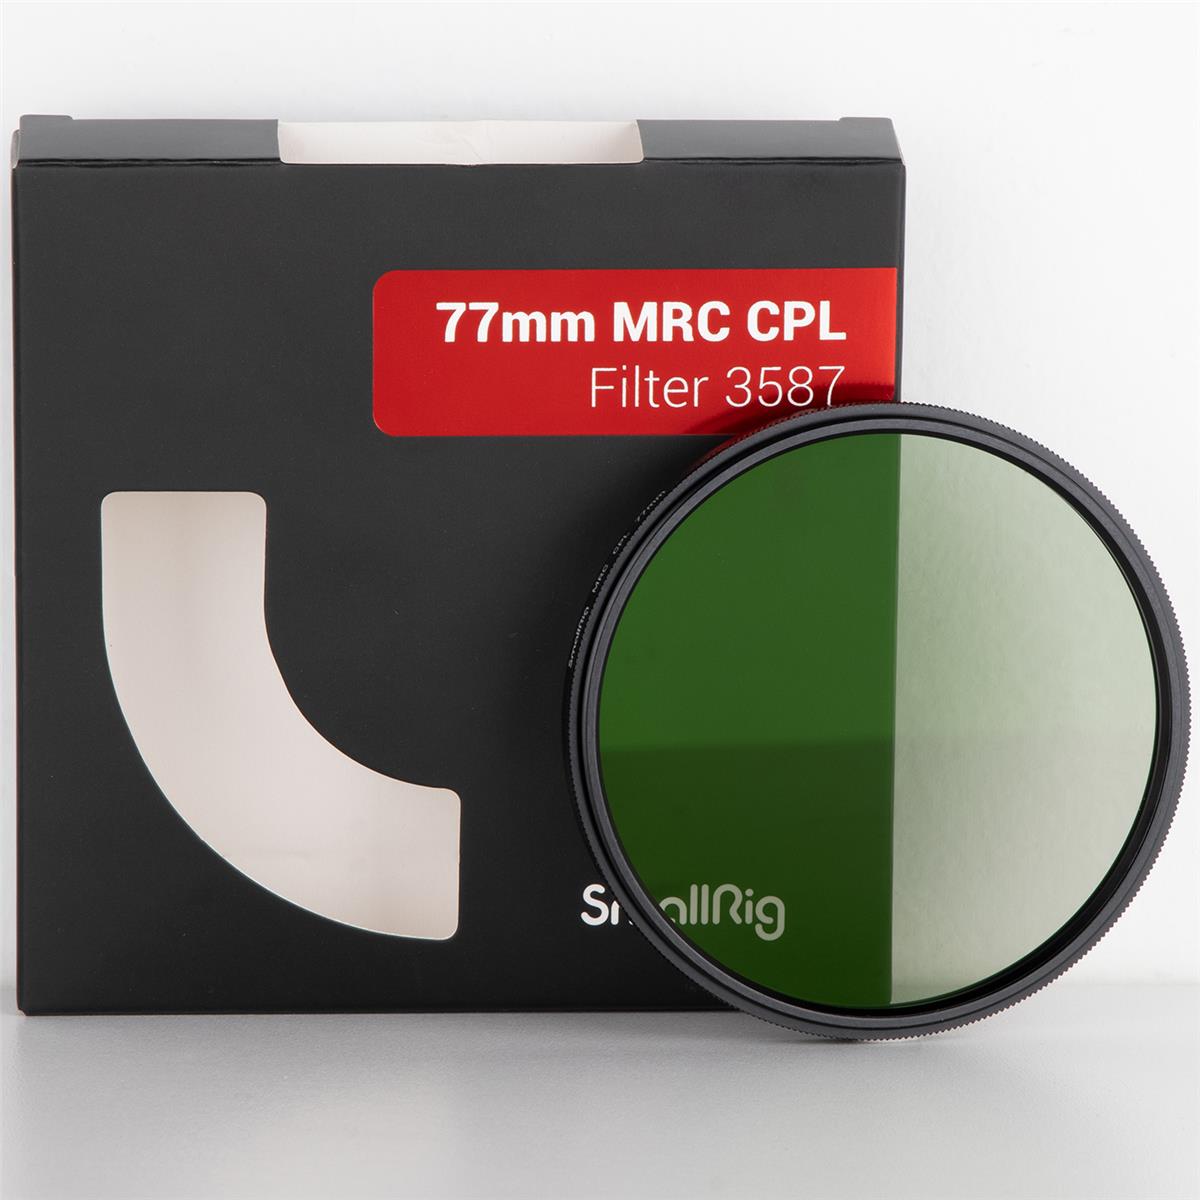 Image of SmallRig 77mm MRC CPL Filter